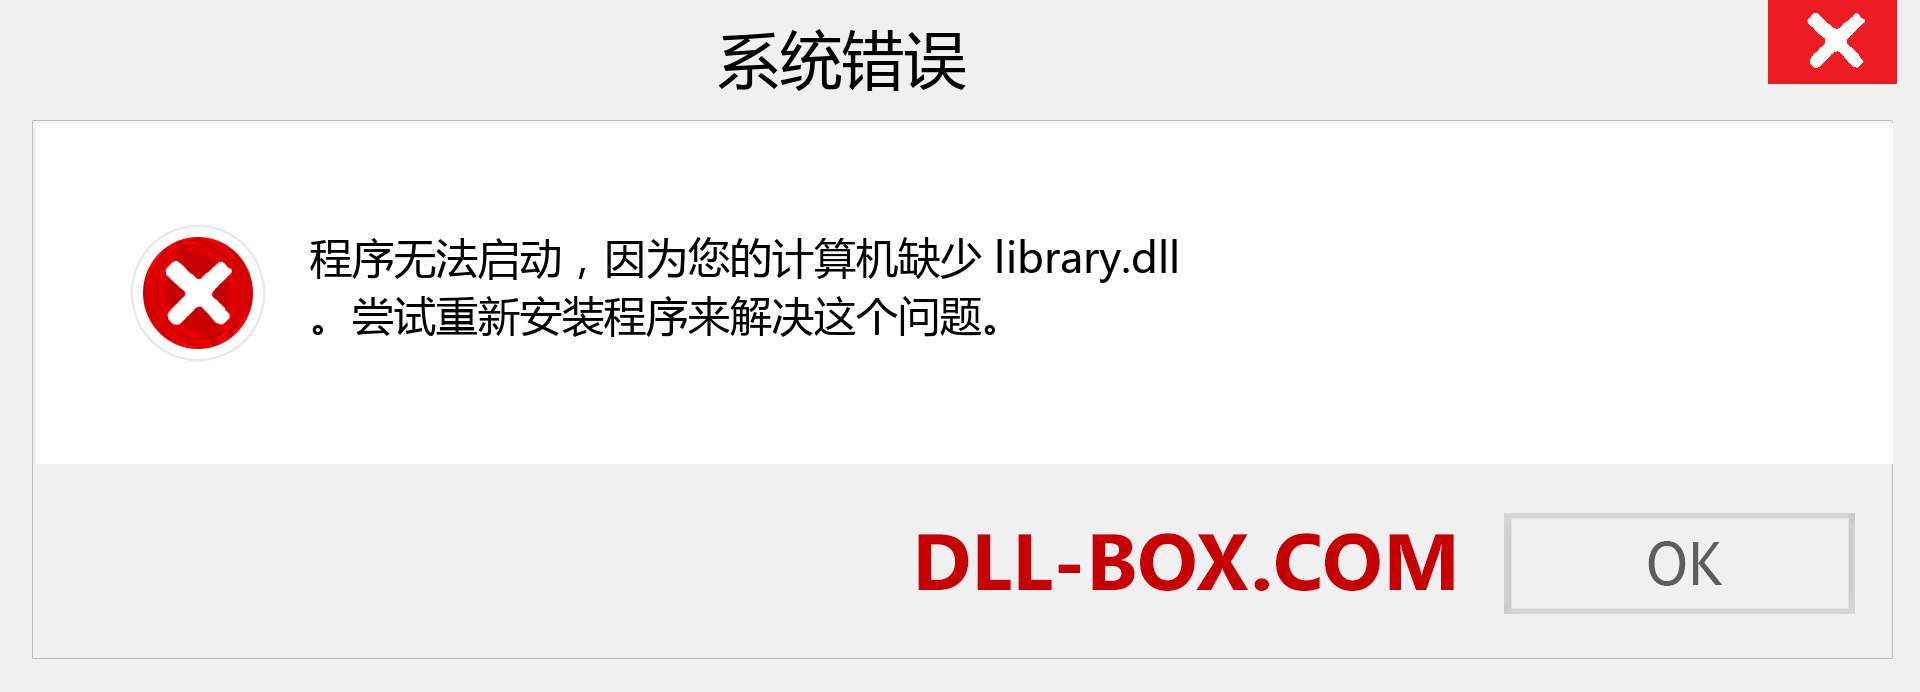 library.dll 文件丢失？。 适用于 Windows 7、8、10 的下载 - 修复 Windows、照片、图像上的 library dll 丢失错误